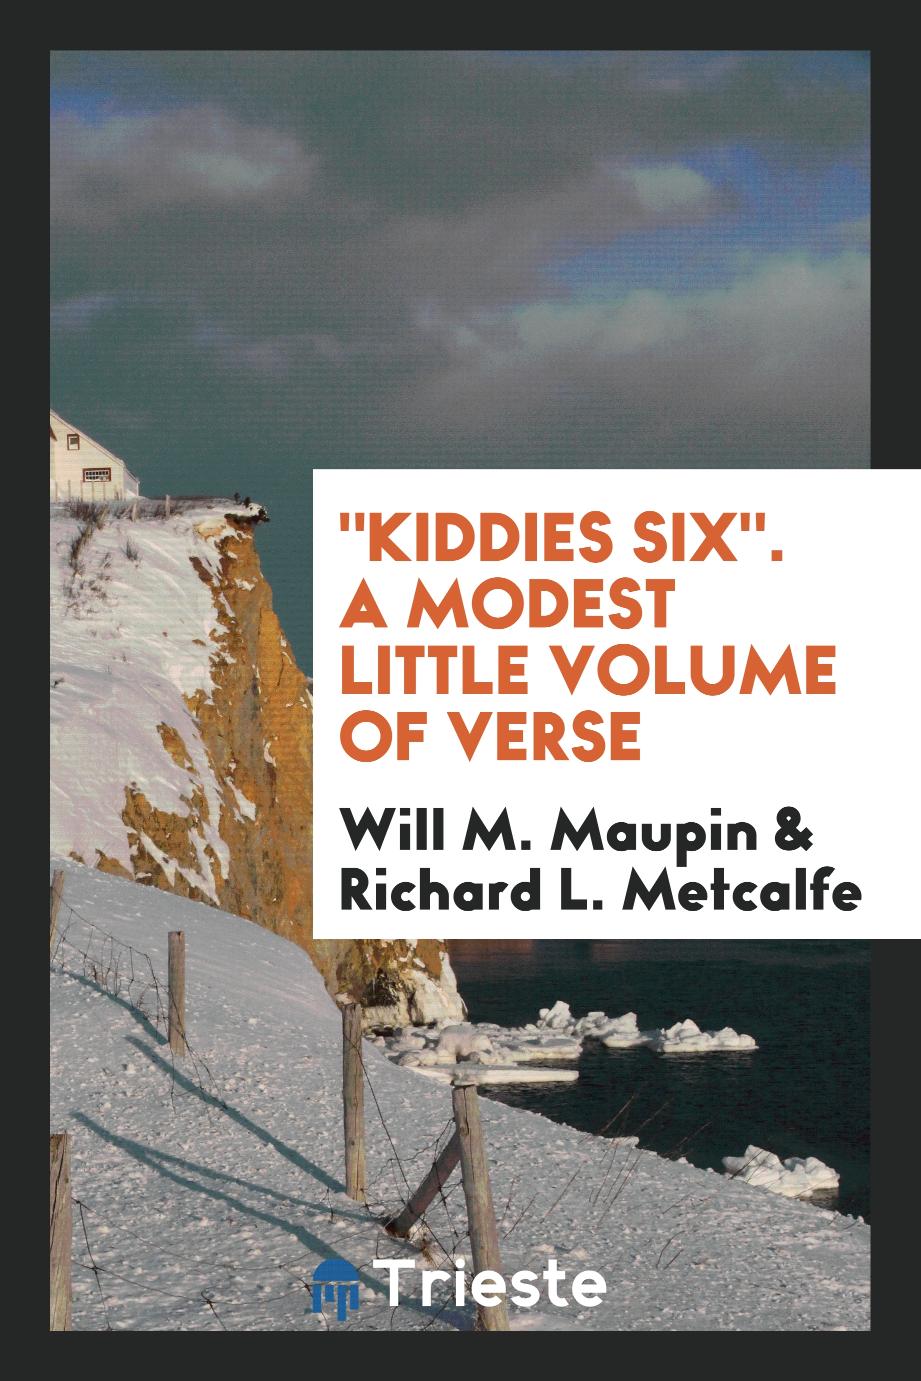 "Kiddies six". A modest little volume of verse